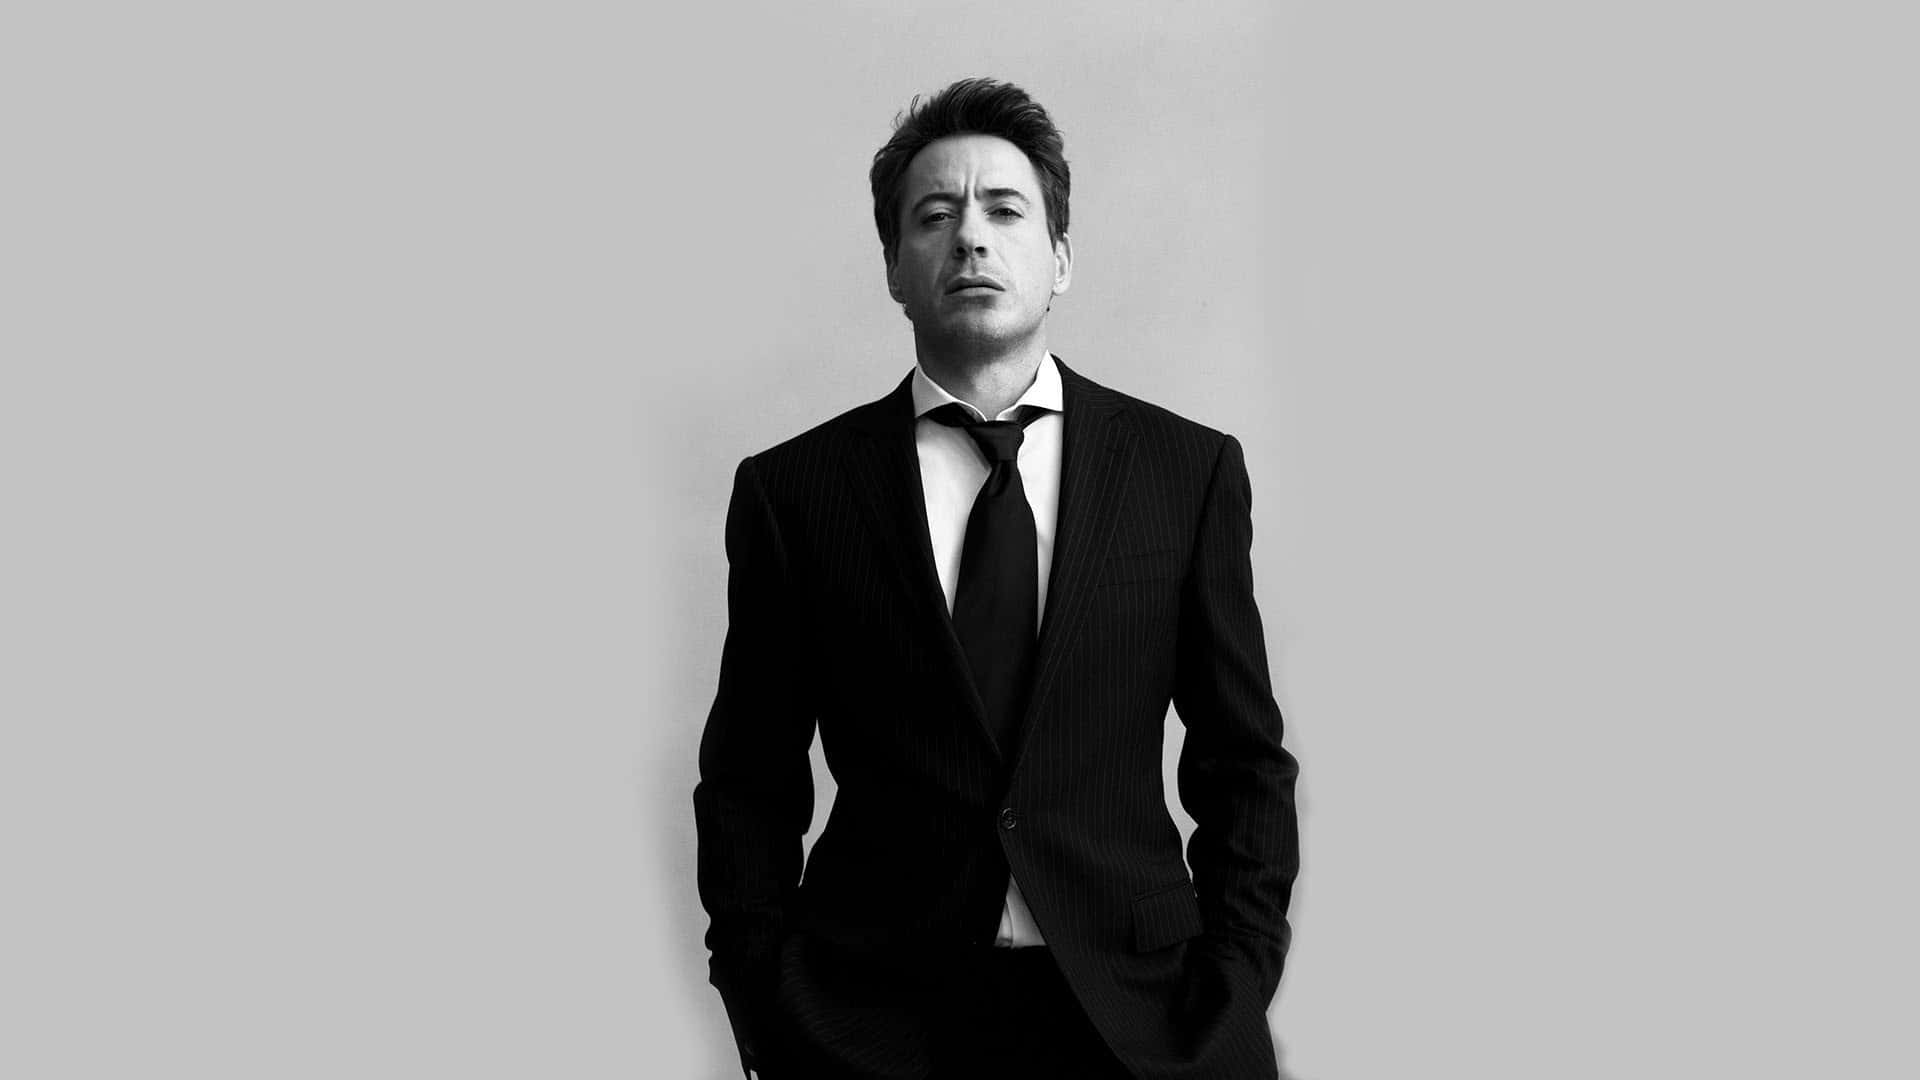 Robert Downey Jr. In Men Suit Background